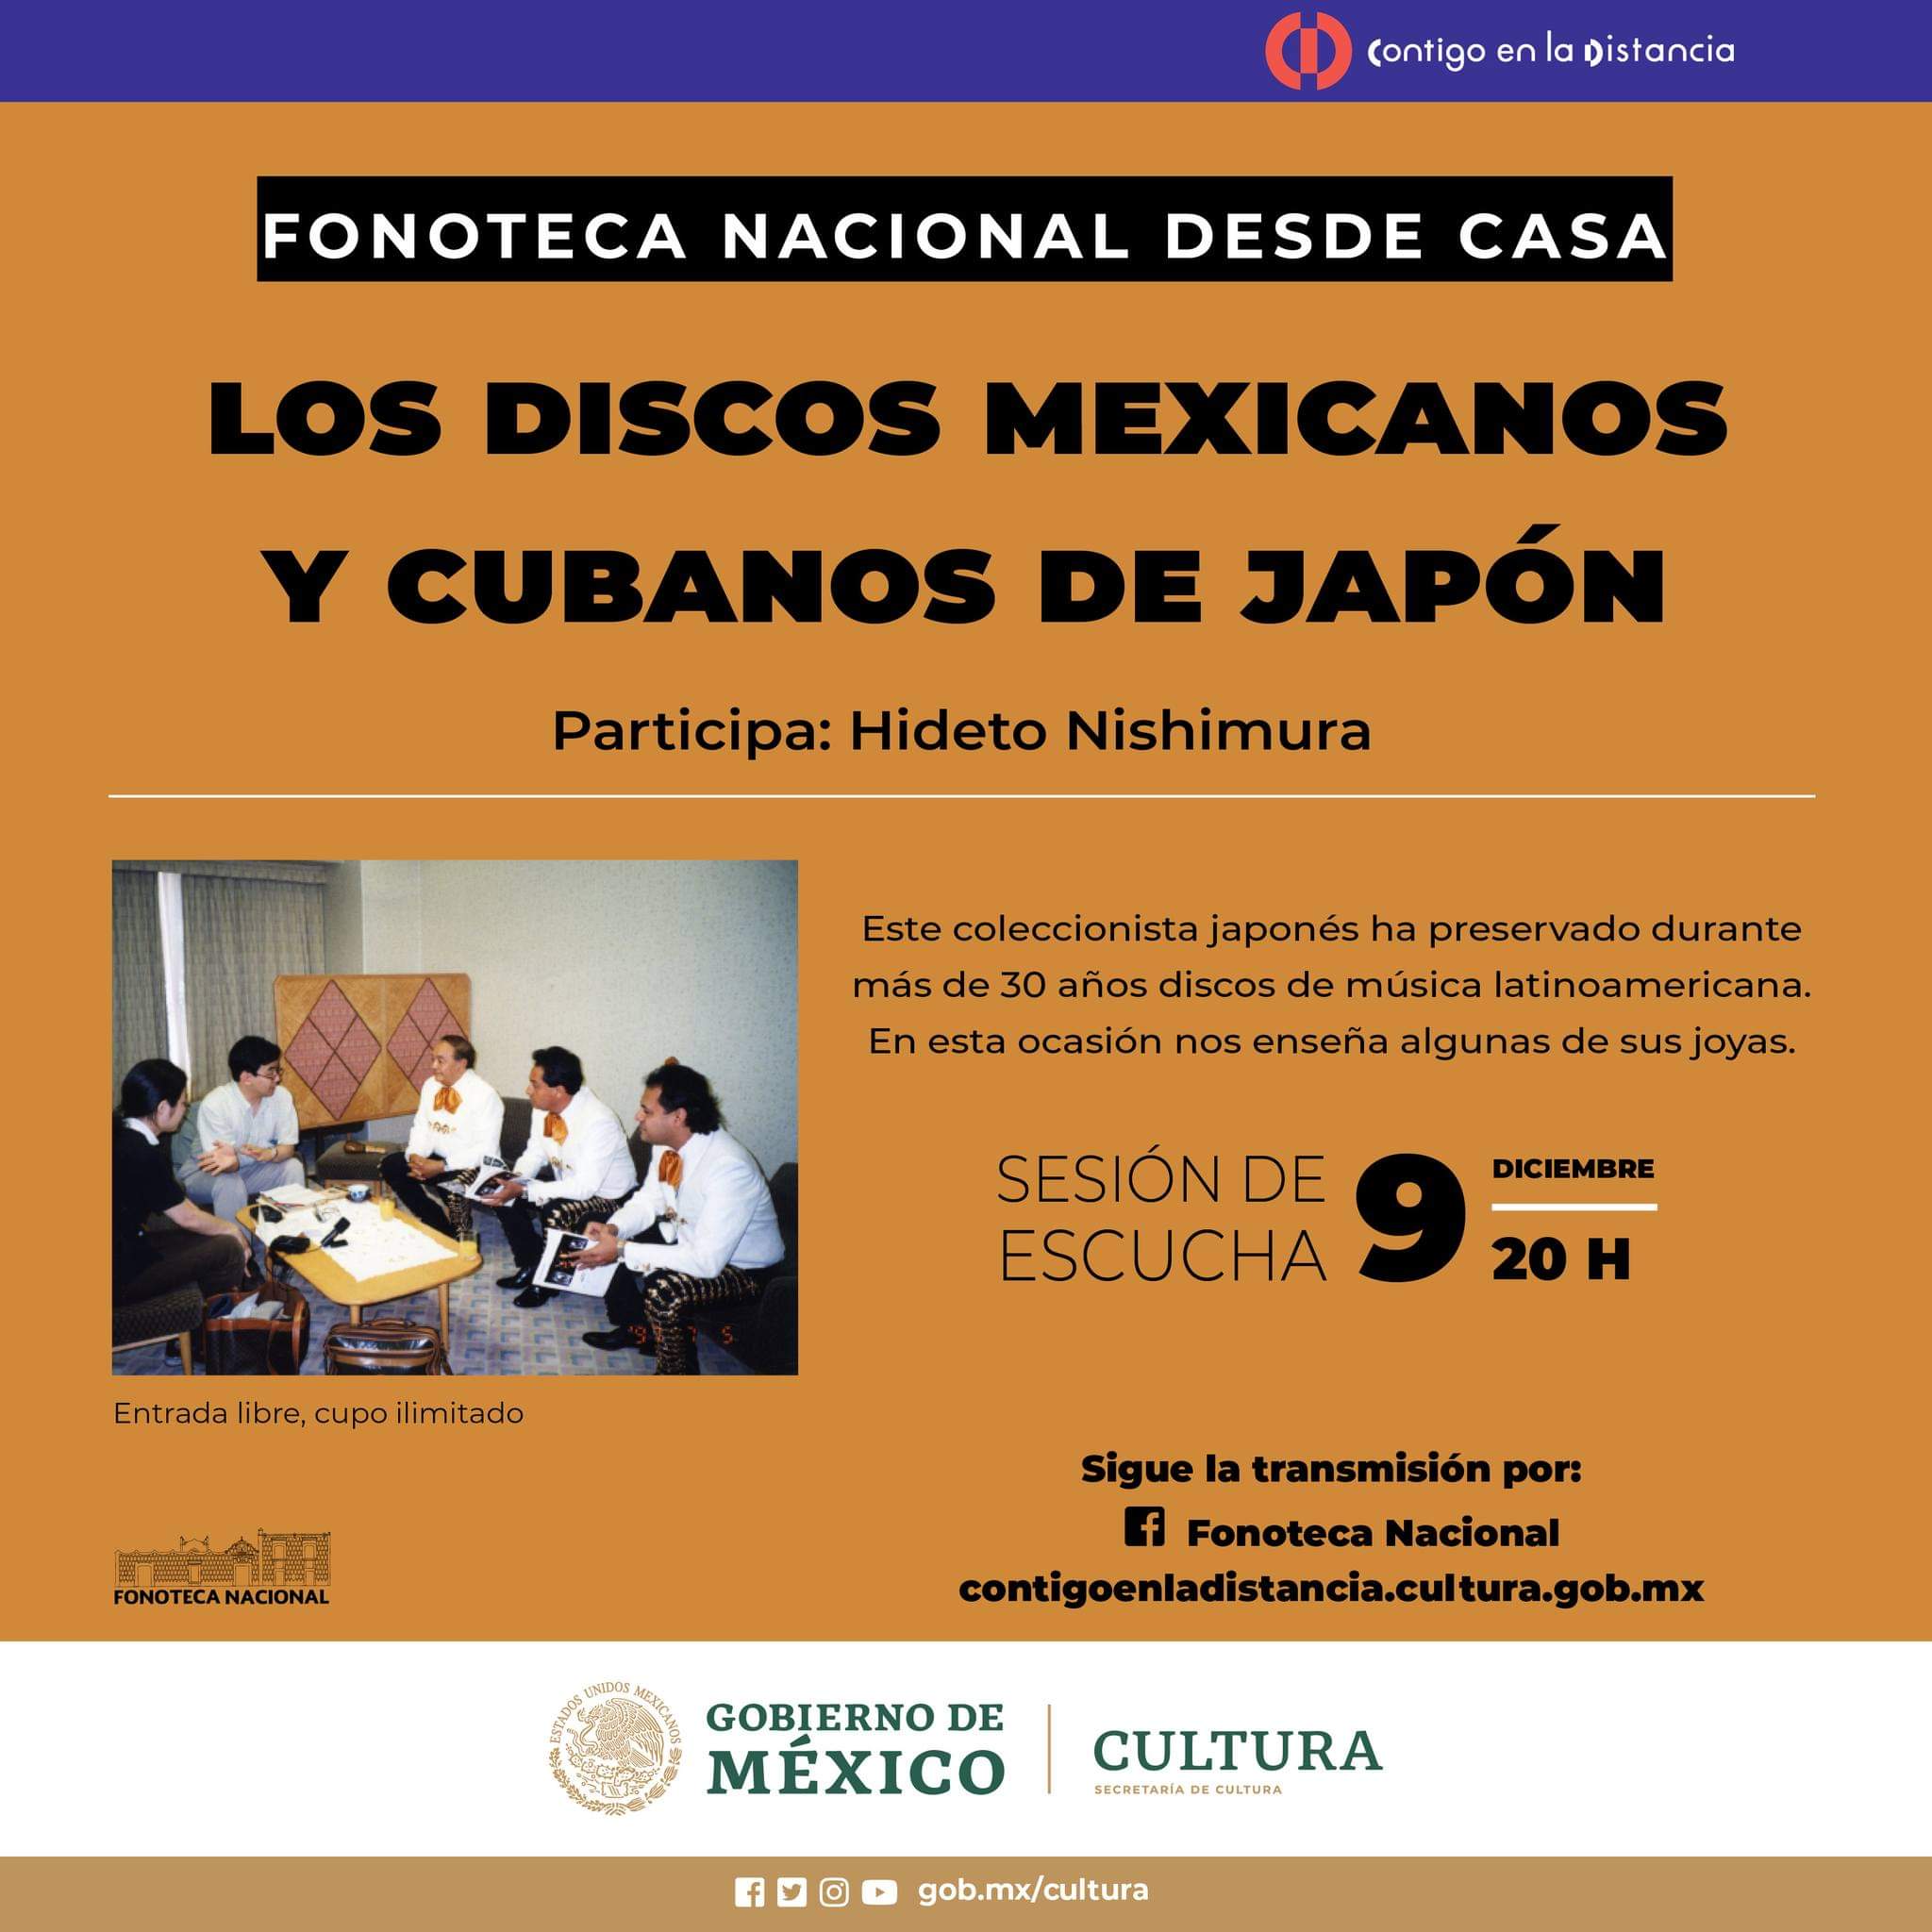 Los discos mexicanos y cubanos de Japón